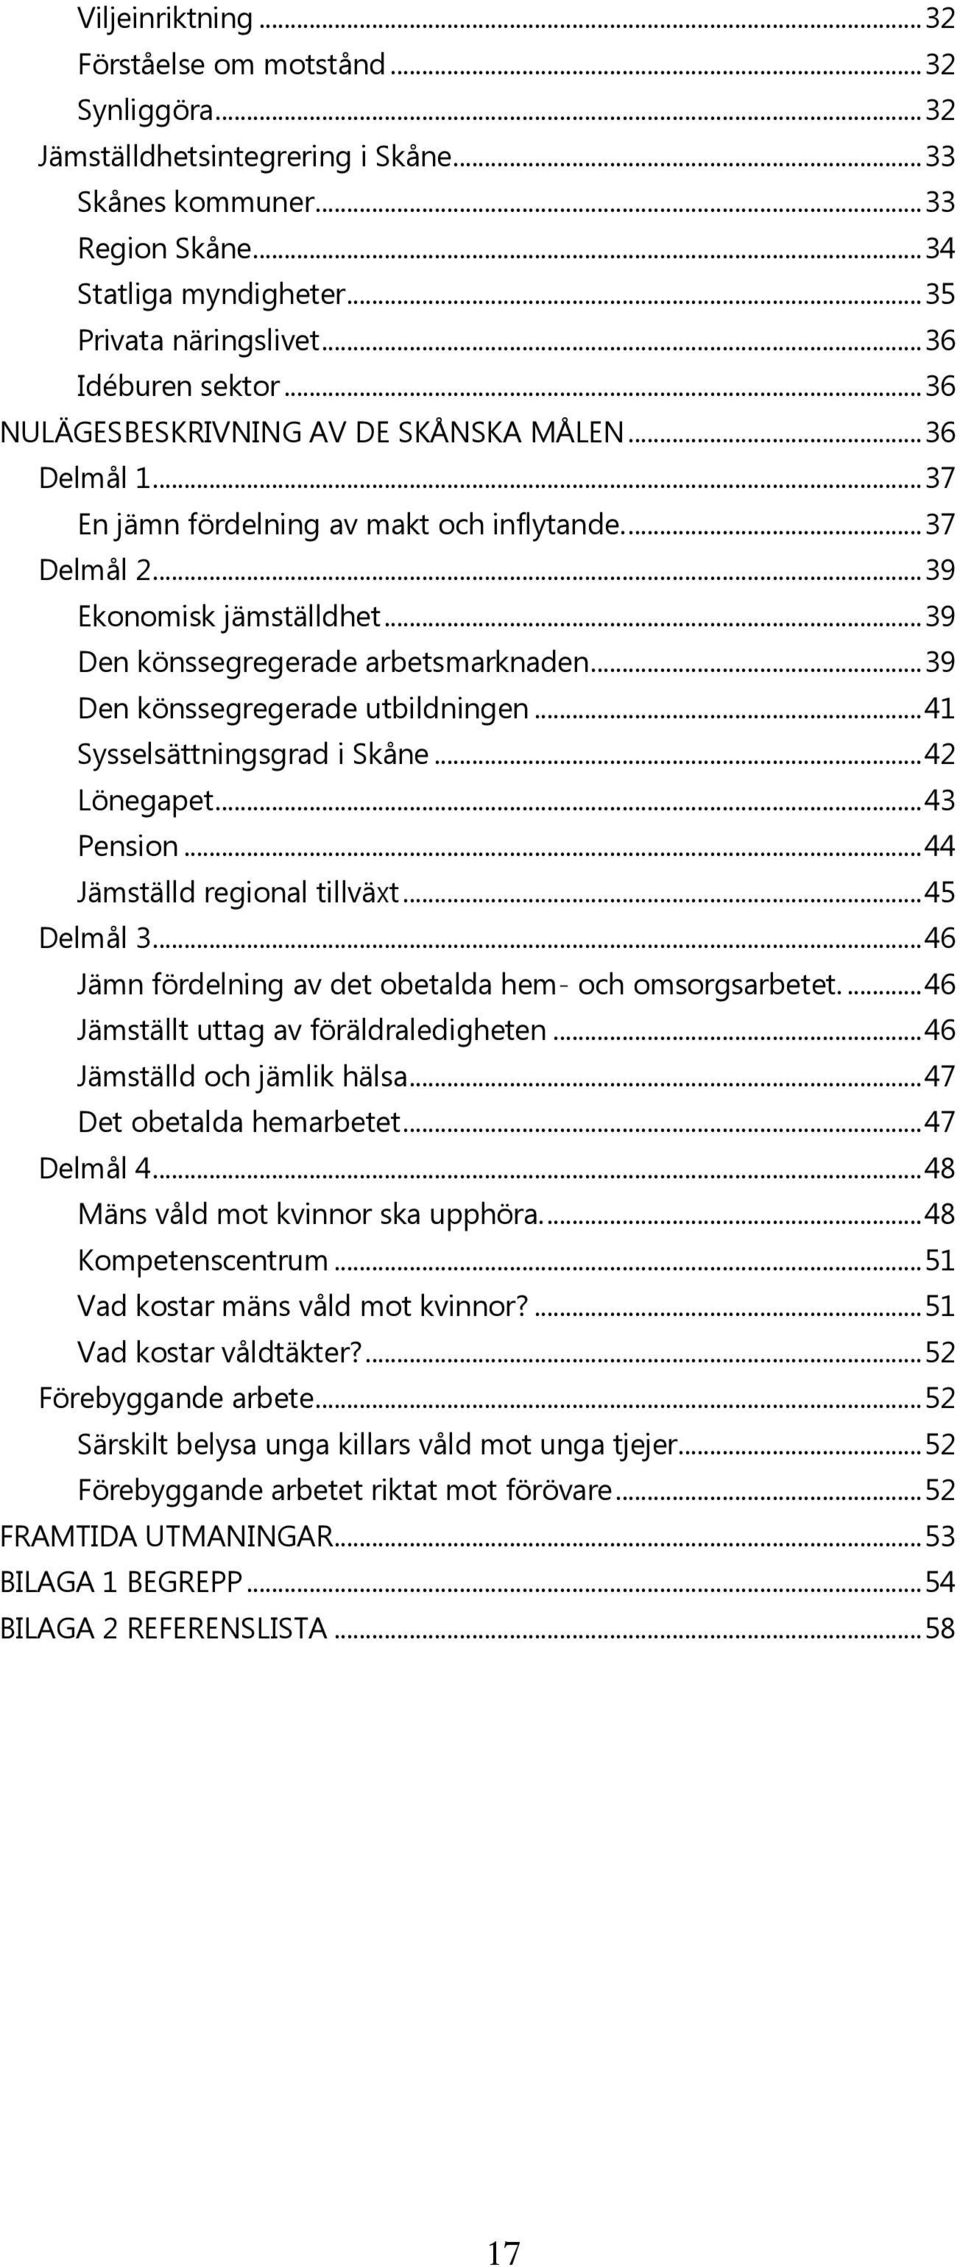 .. 39 Den könssegregerade arbetsmarknaden... 39 Den könssegregerade utbildningen... 41 Sysselsättningsgrad i Skåne... 42 Lönegapet... 43 Pension... 44 Jämställd regional tillväxt... 45 Delmål 3.